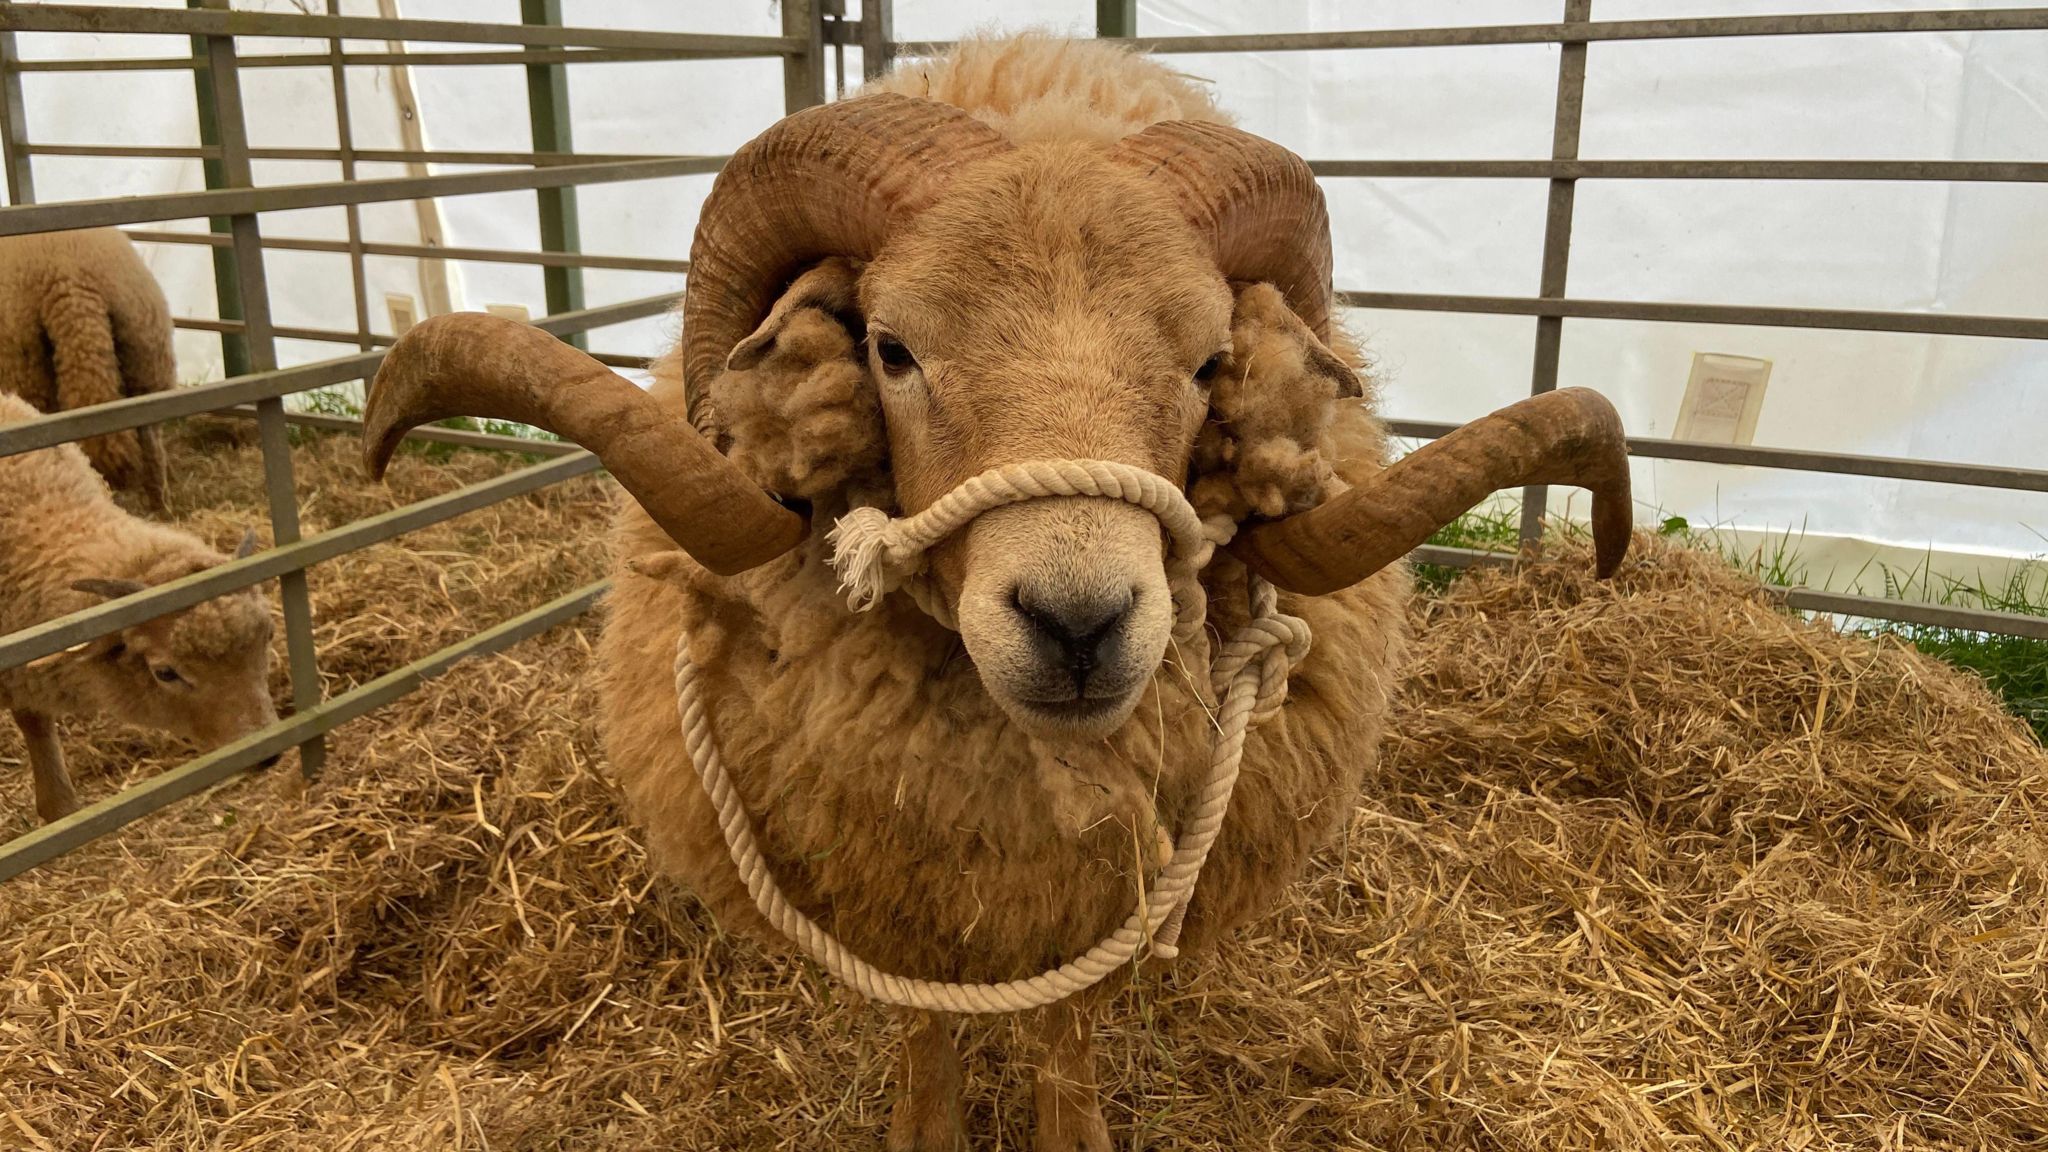 A Portland sheep